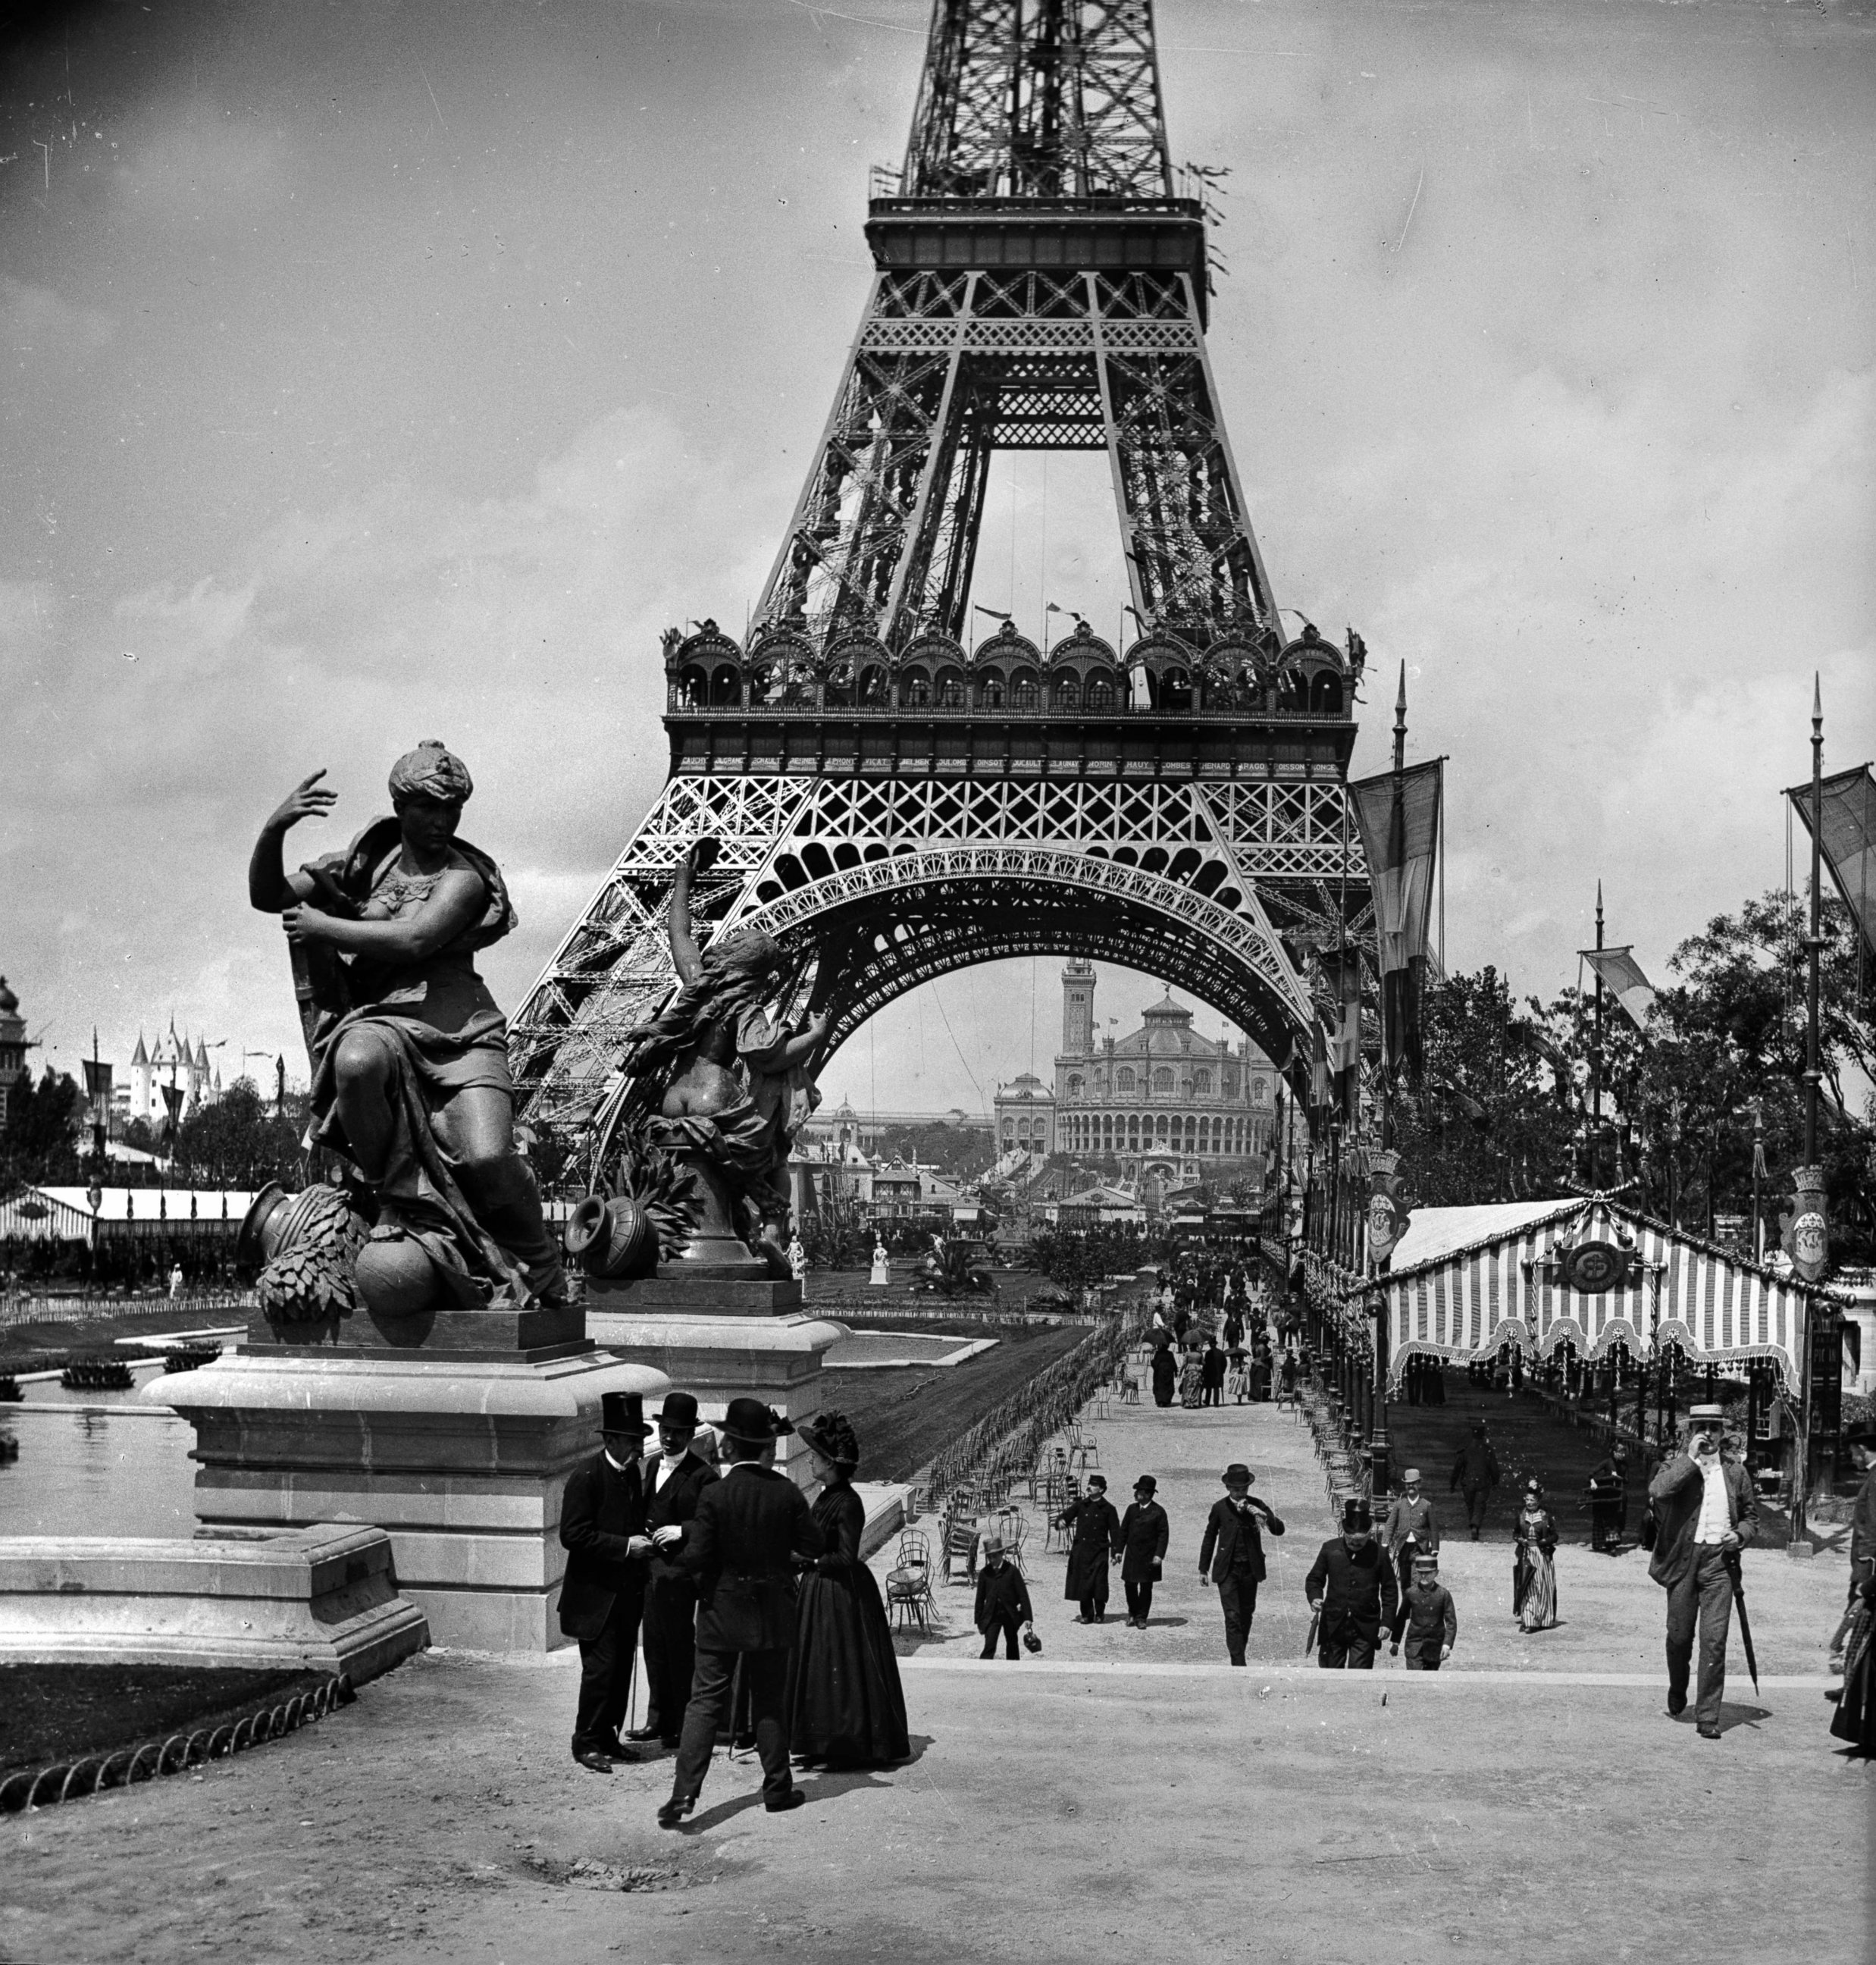 Франция 1800. Париж 1889 Эйфелева башня. Эйфелева башня в Париже 1889 год. Эйфелева башня в Париже 19 века. Эйфелева башня открытие 1889.